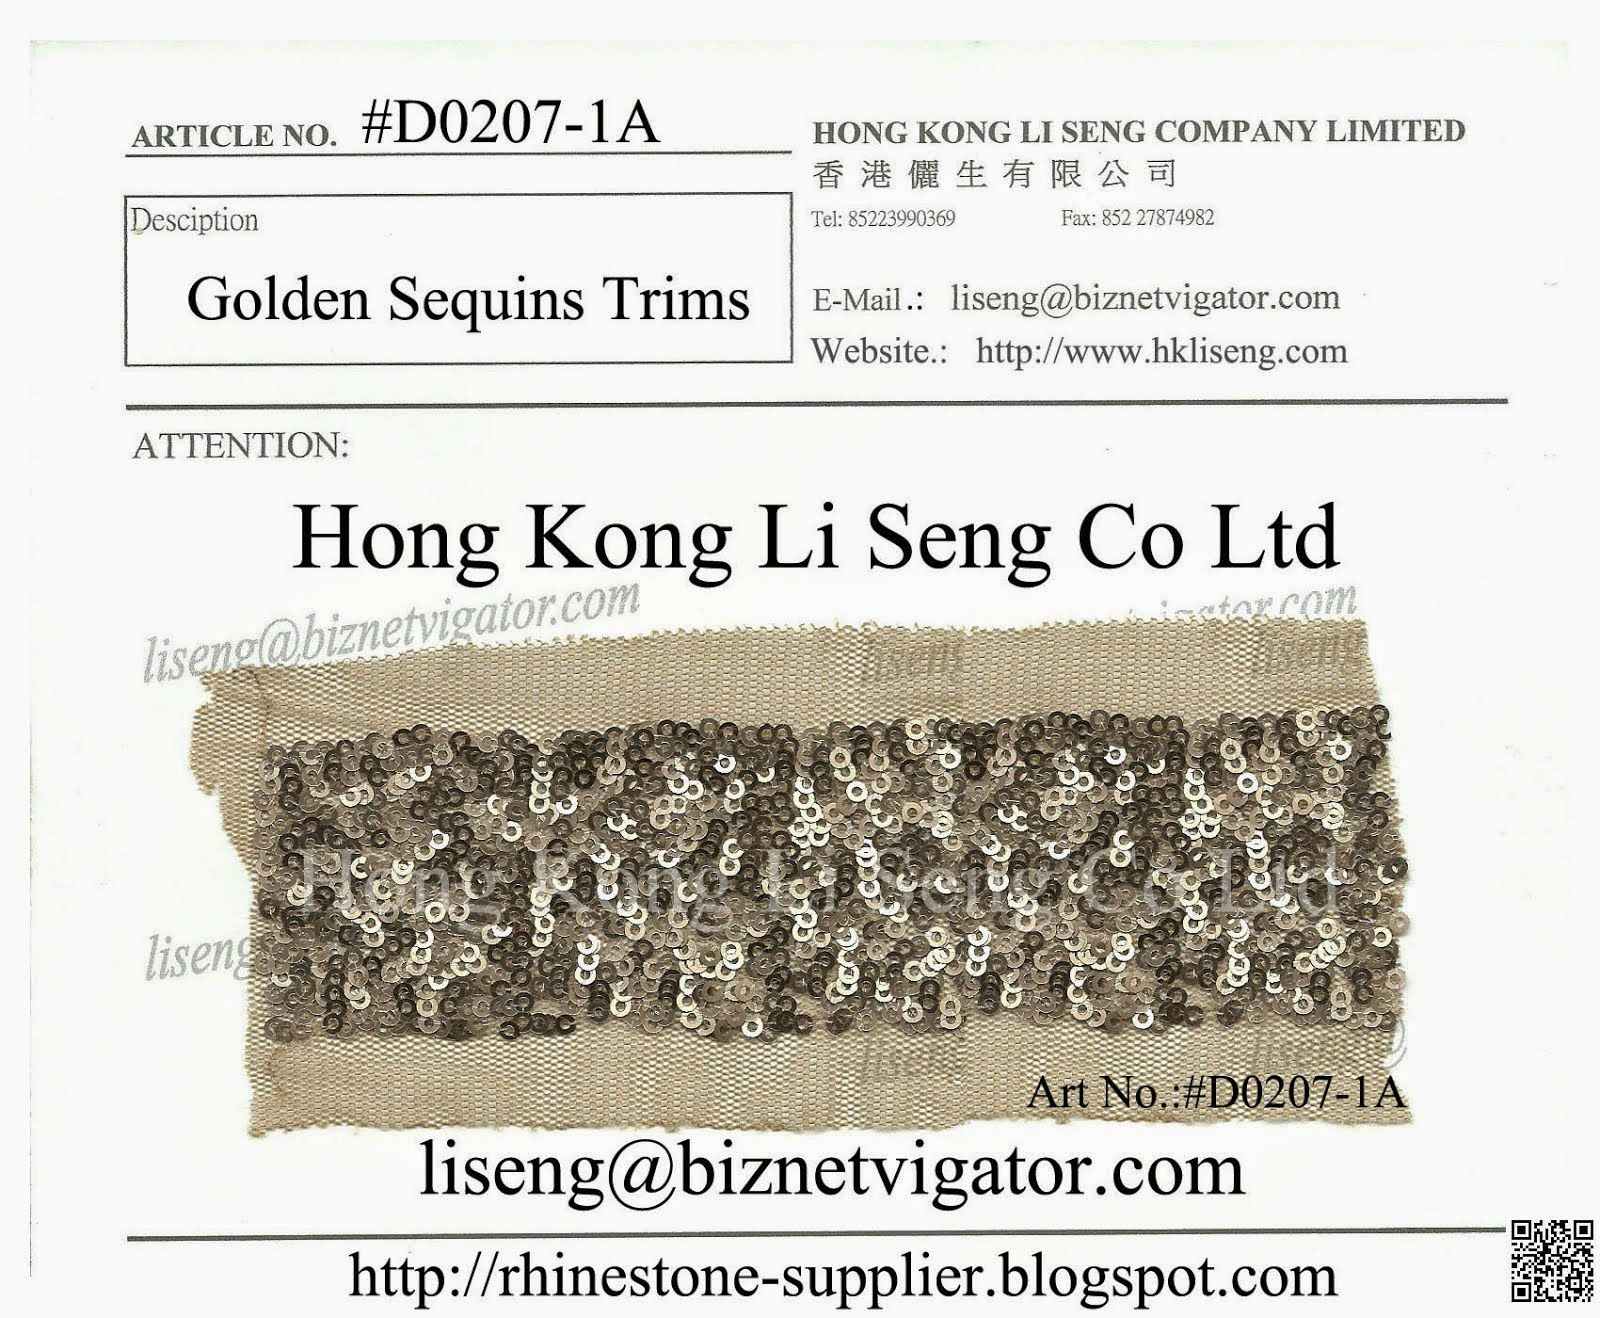 Golden Sequins Trims Manufacturer - Hong Kong Li Seng Co Ltd